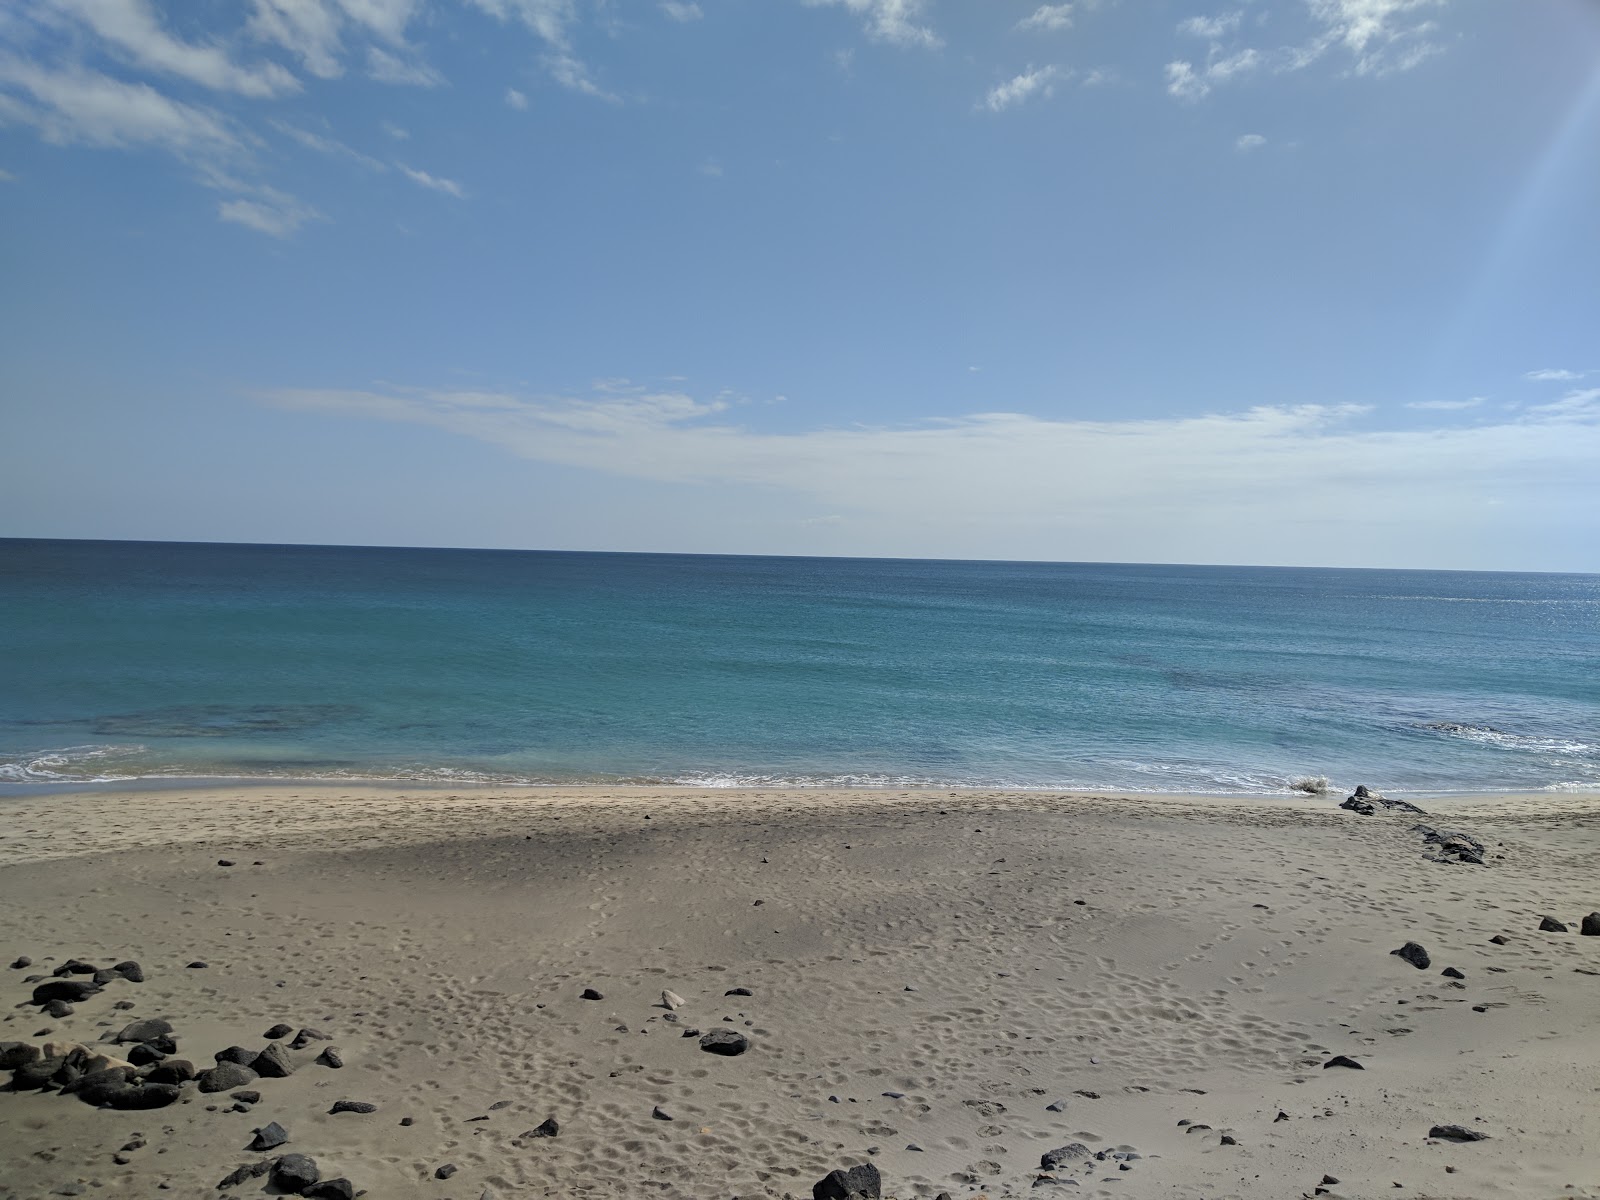 Playa Juan Gomez'in fotoğrafı doğrudan plaj ile birlikte